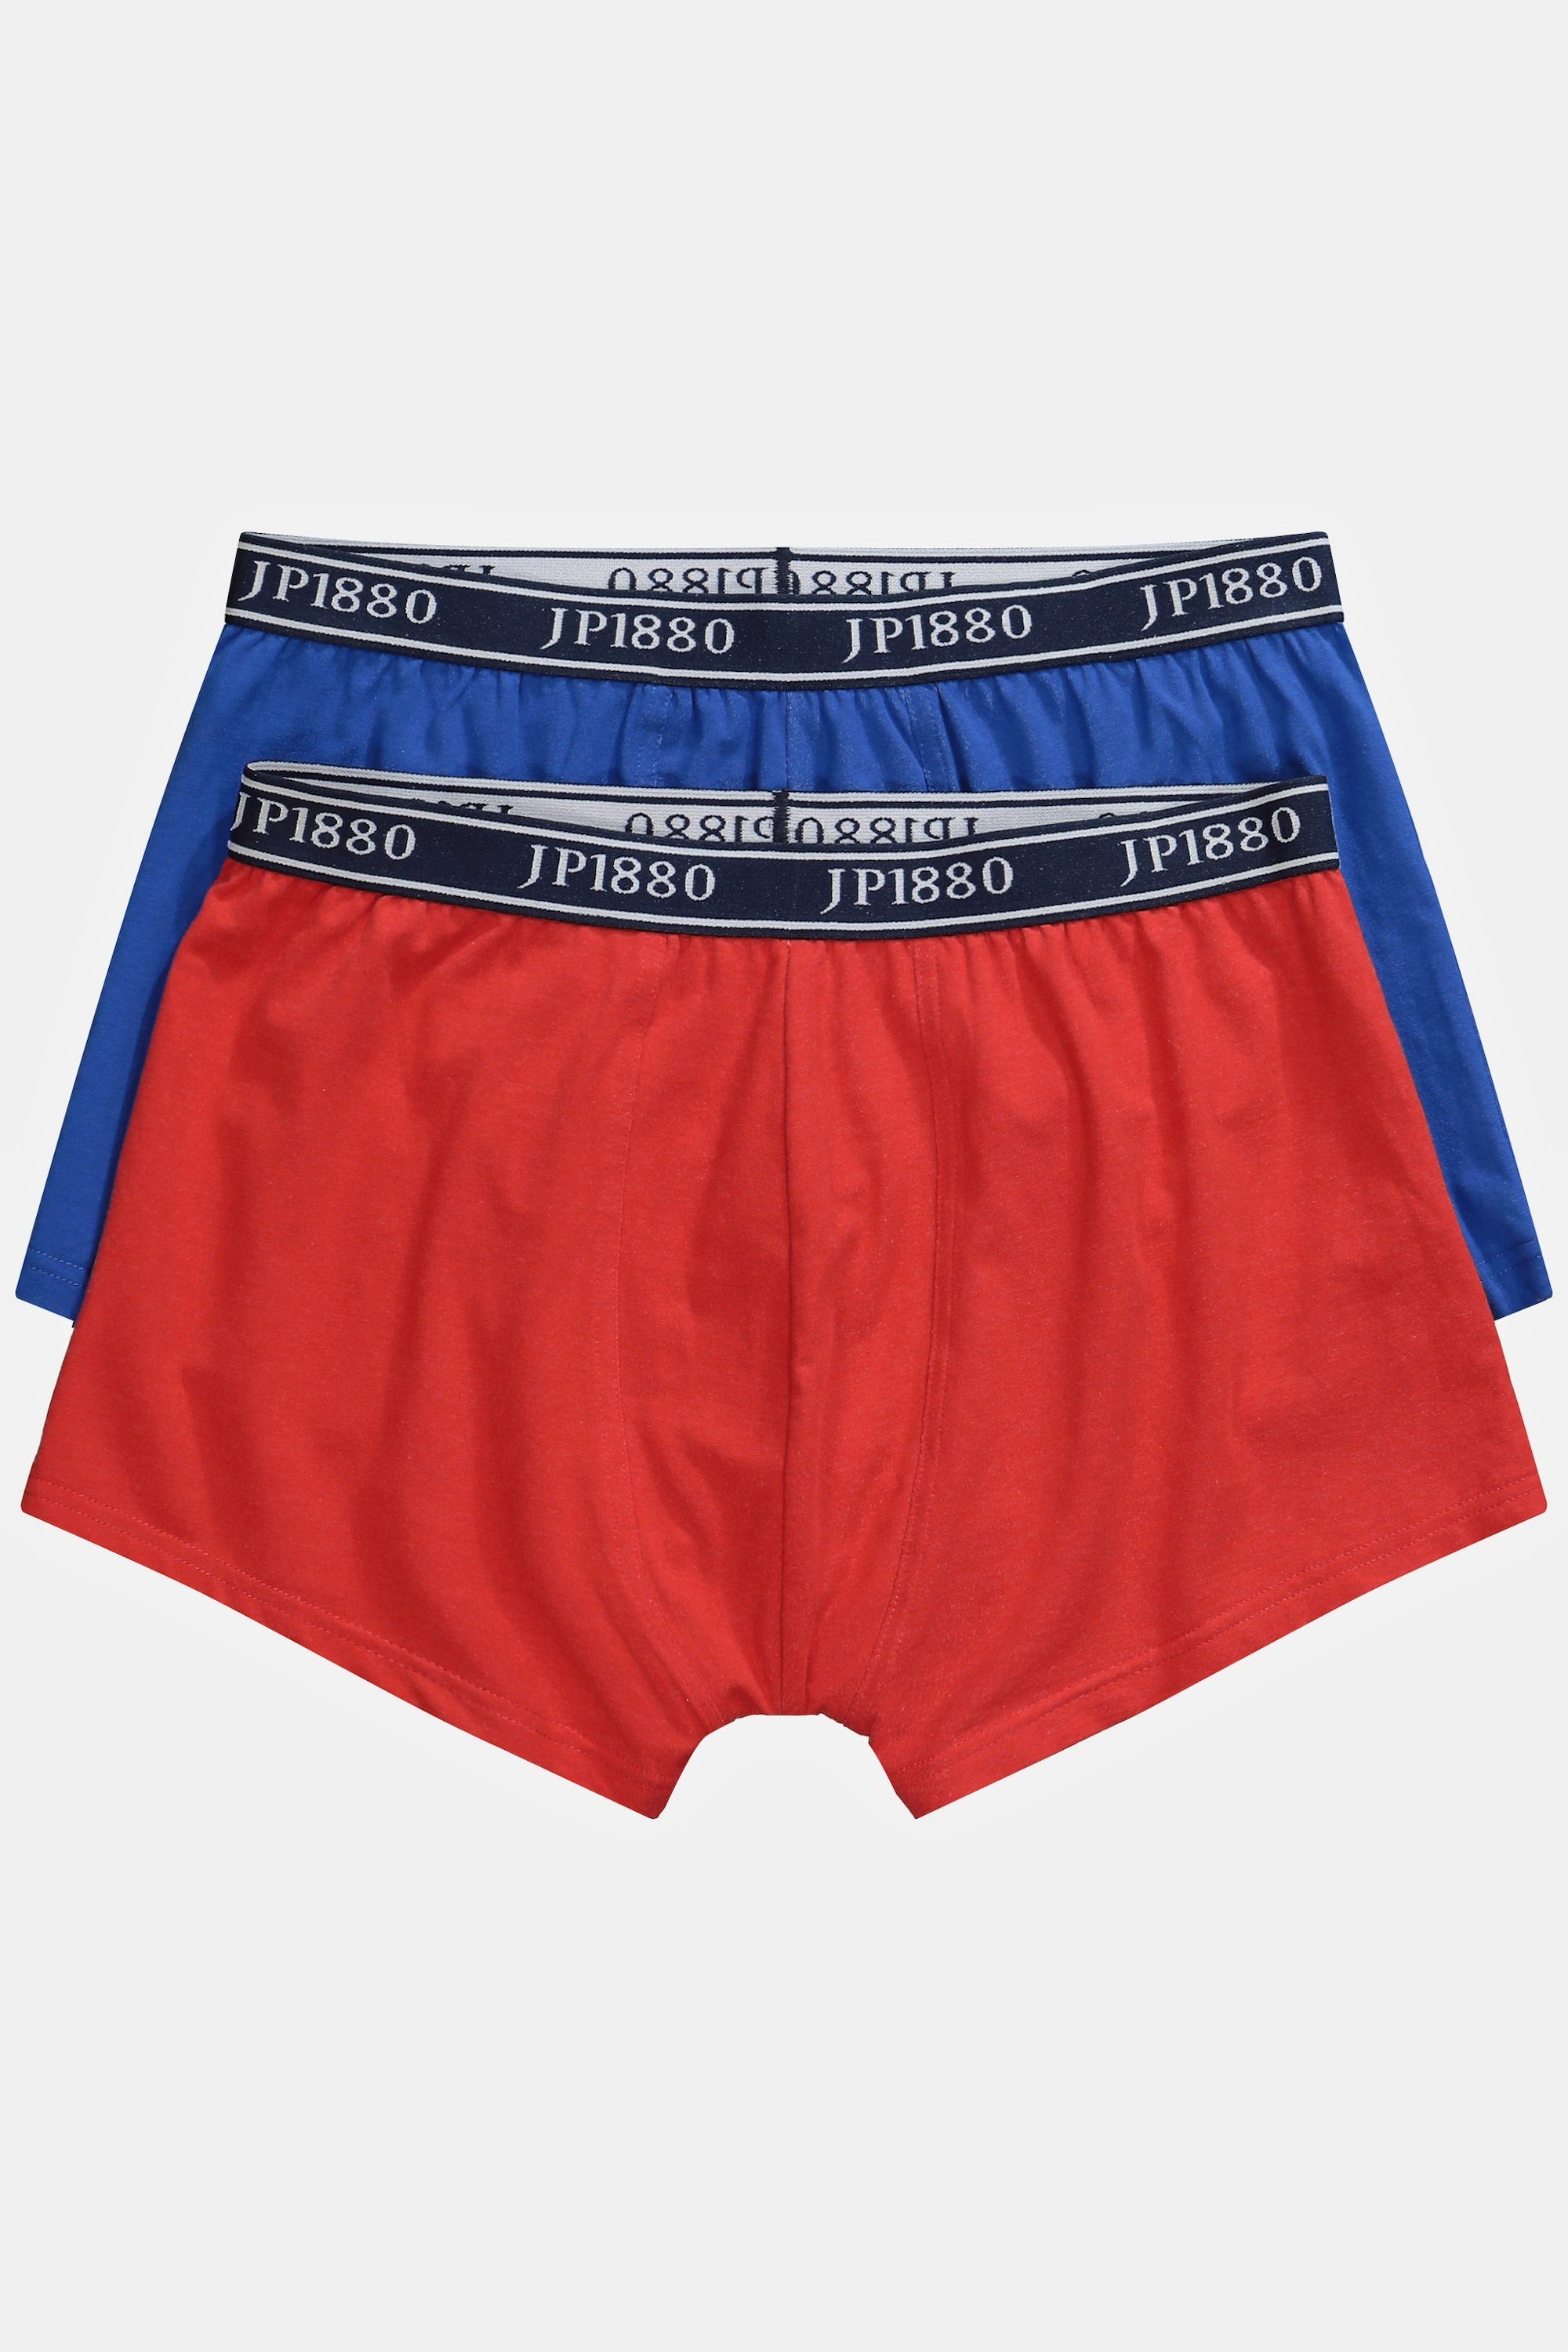 JP1880 FLEXNAMIC® Unterhose 2er-Pack Hip-Pants paprikarot Boxershorts